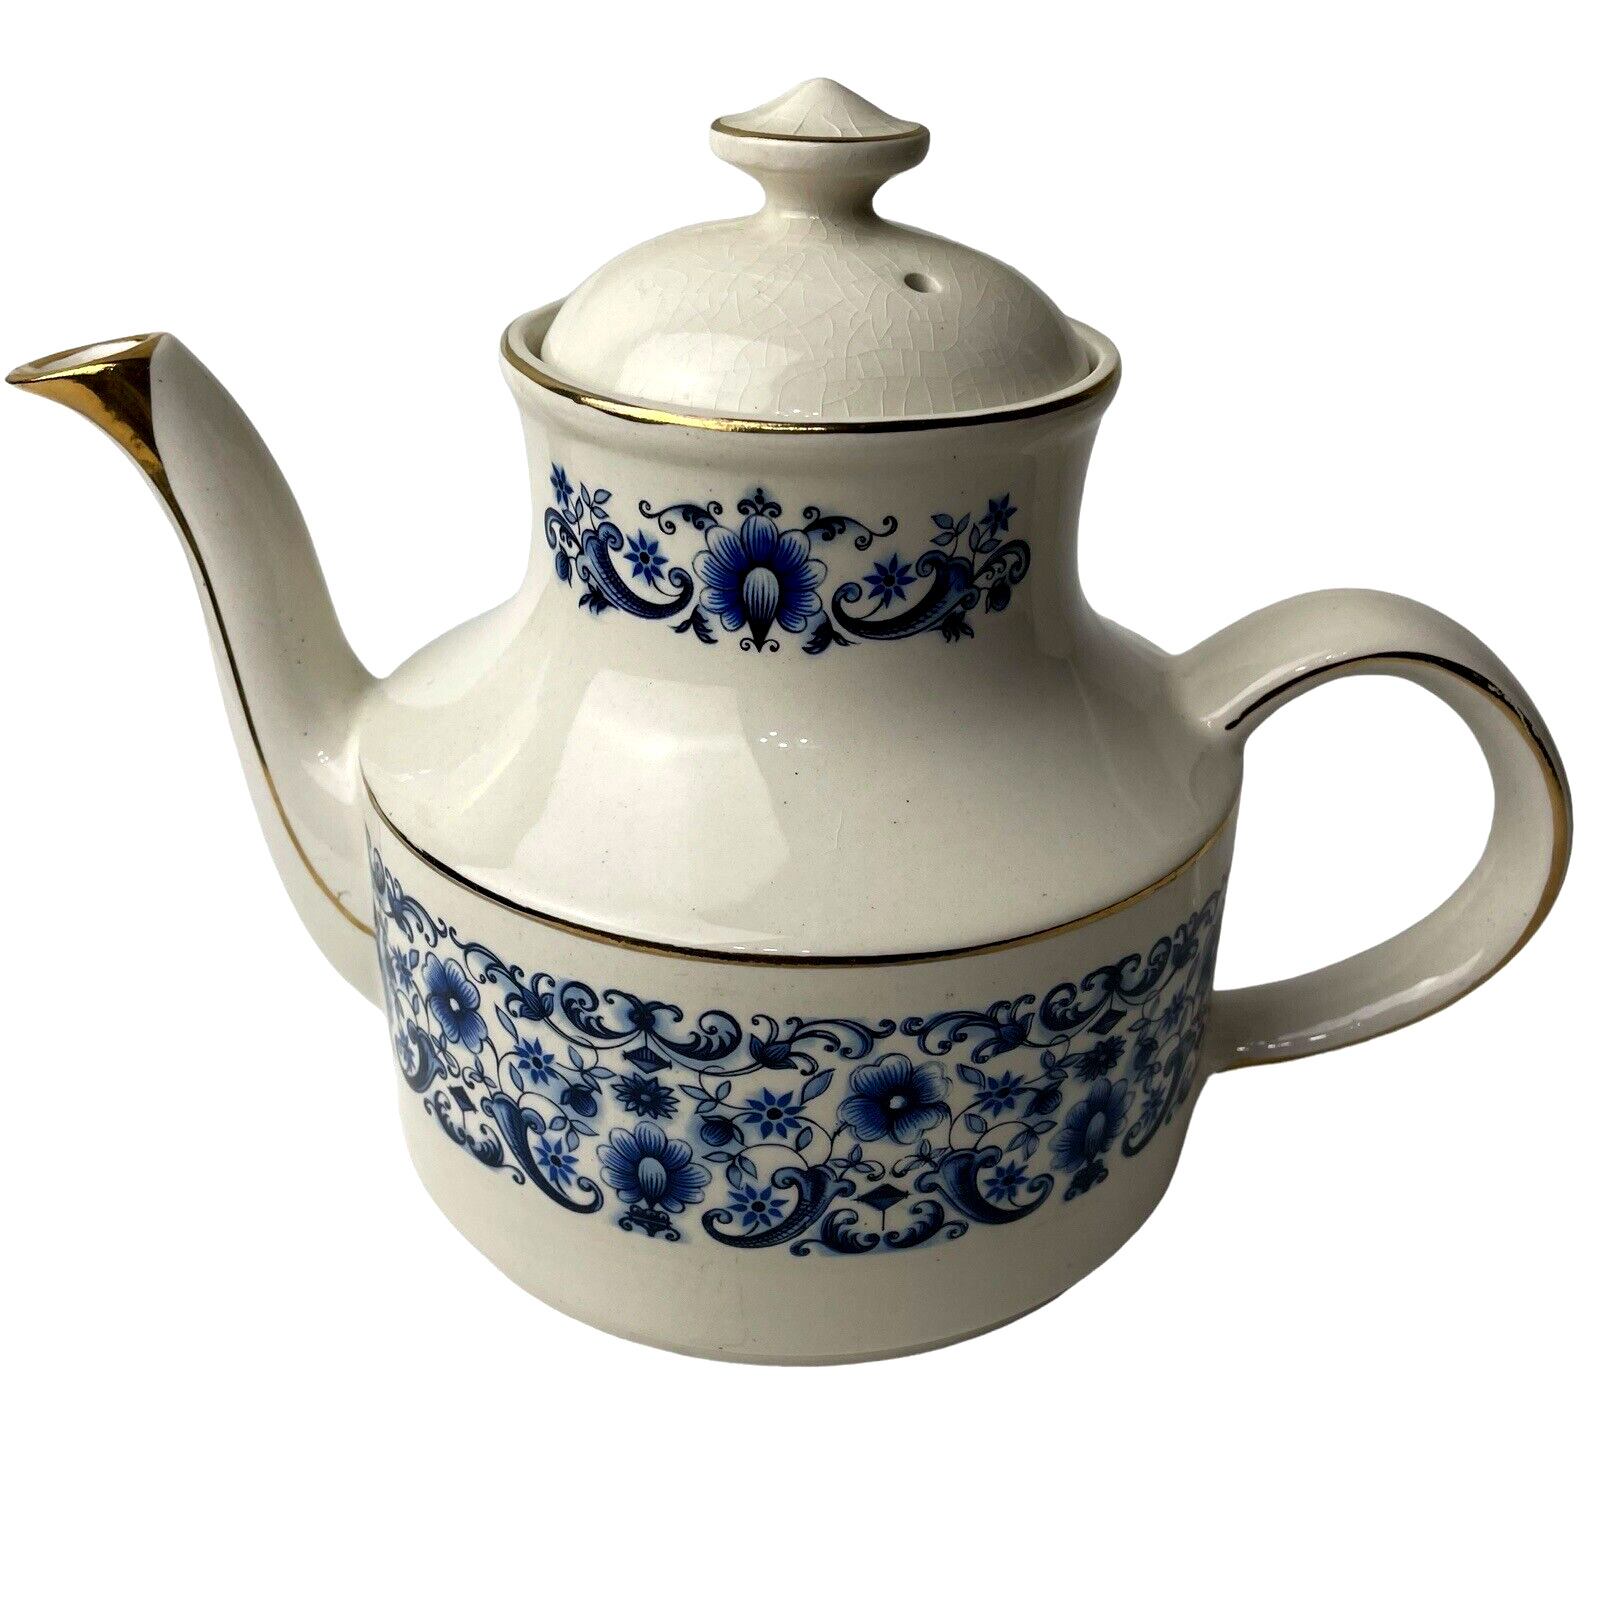 Arthur Wood England 5304 Stratford Blue Floral Teapot Porcelain w Gold Trim VTG